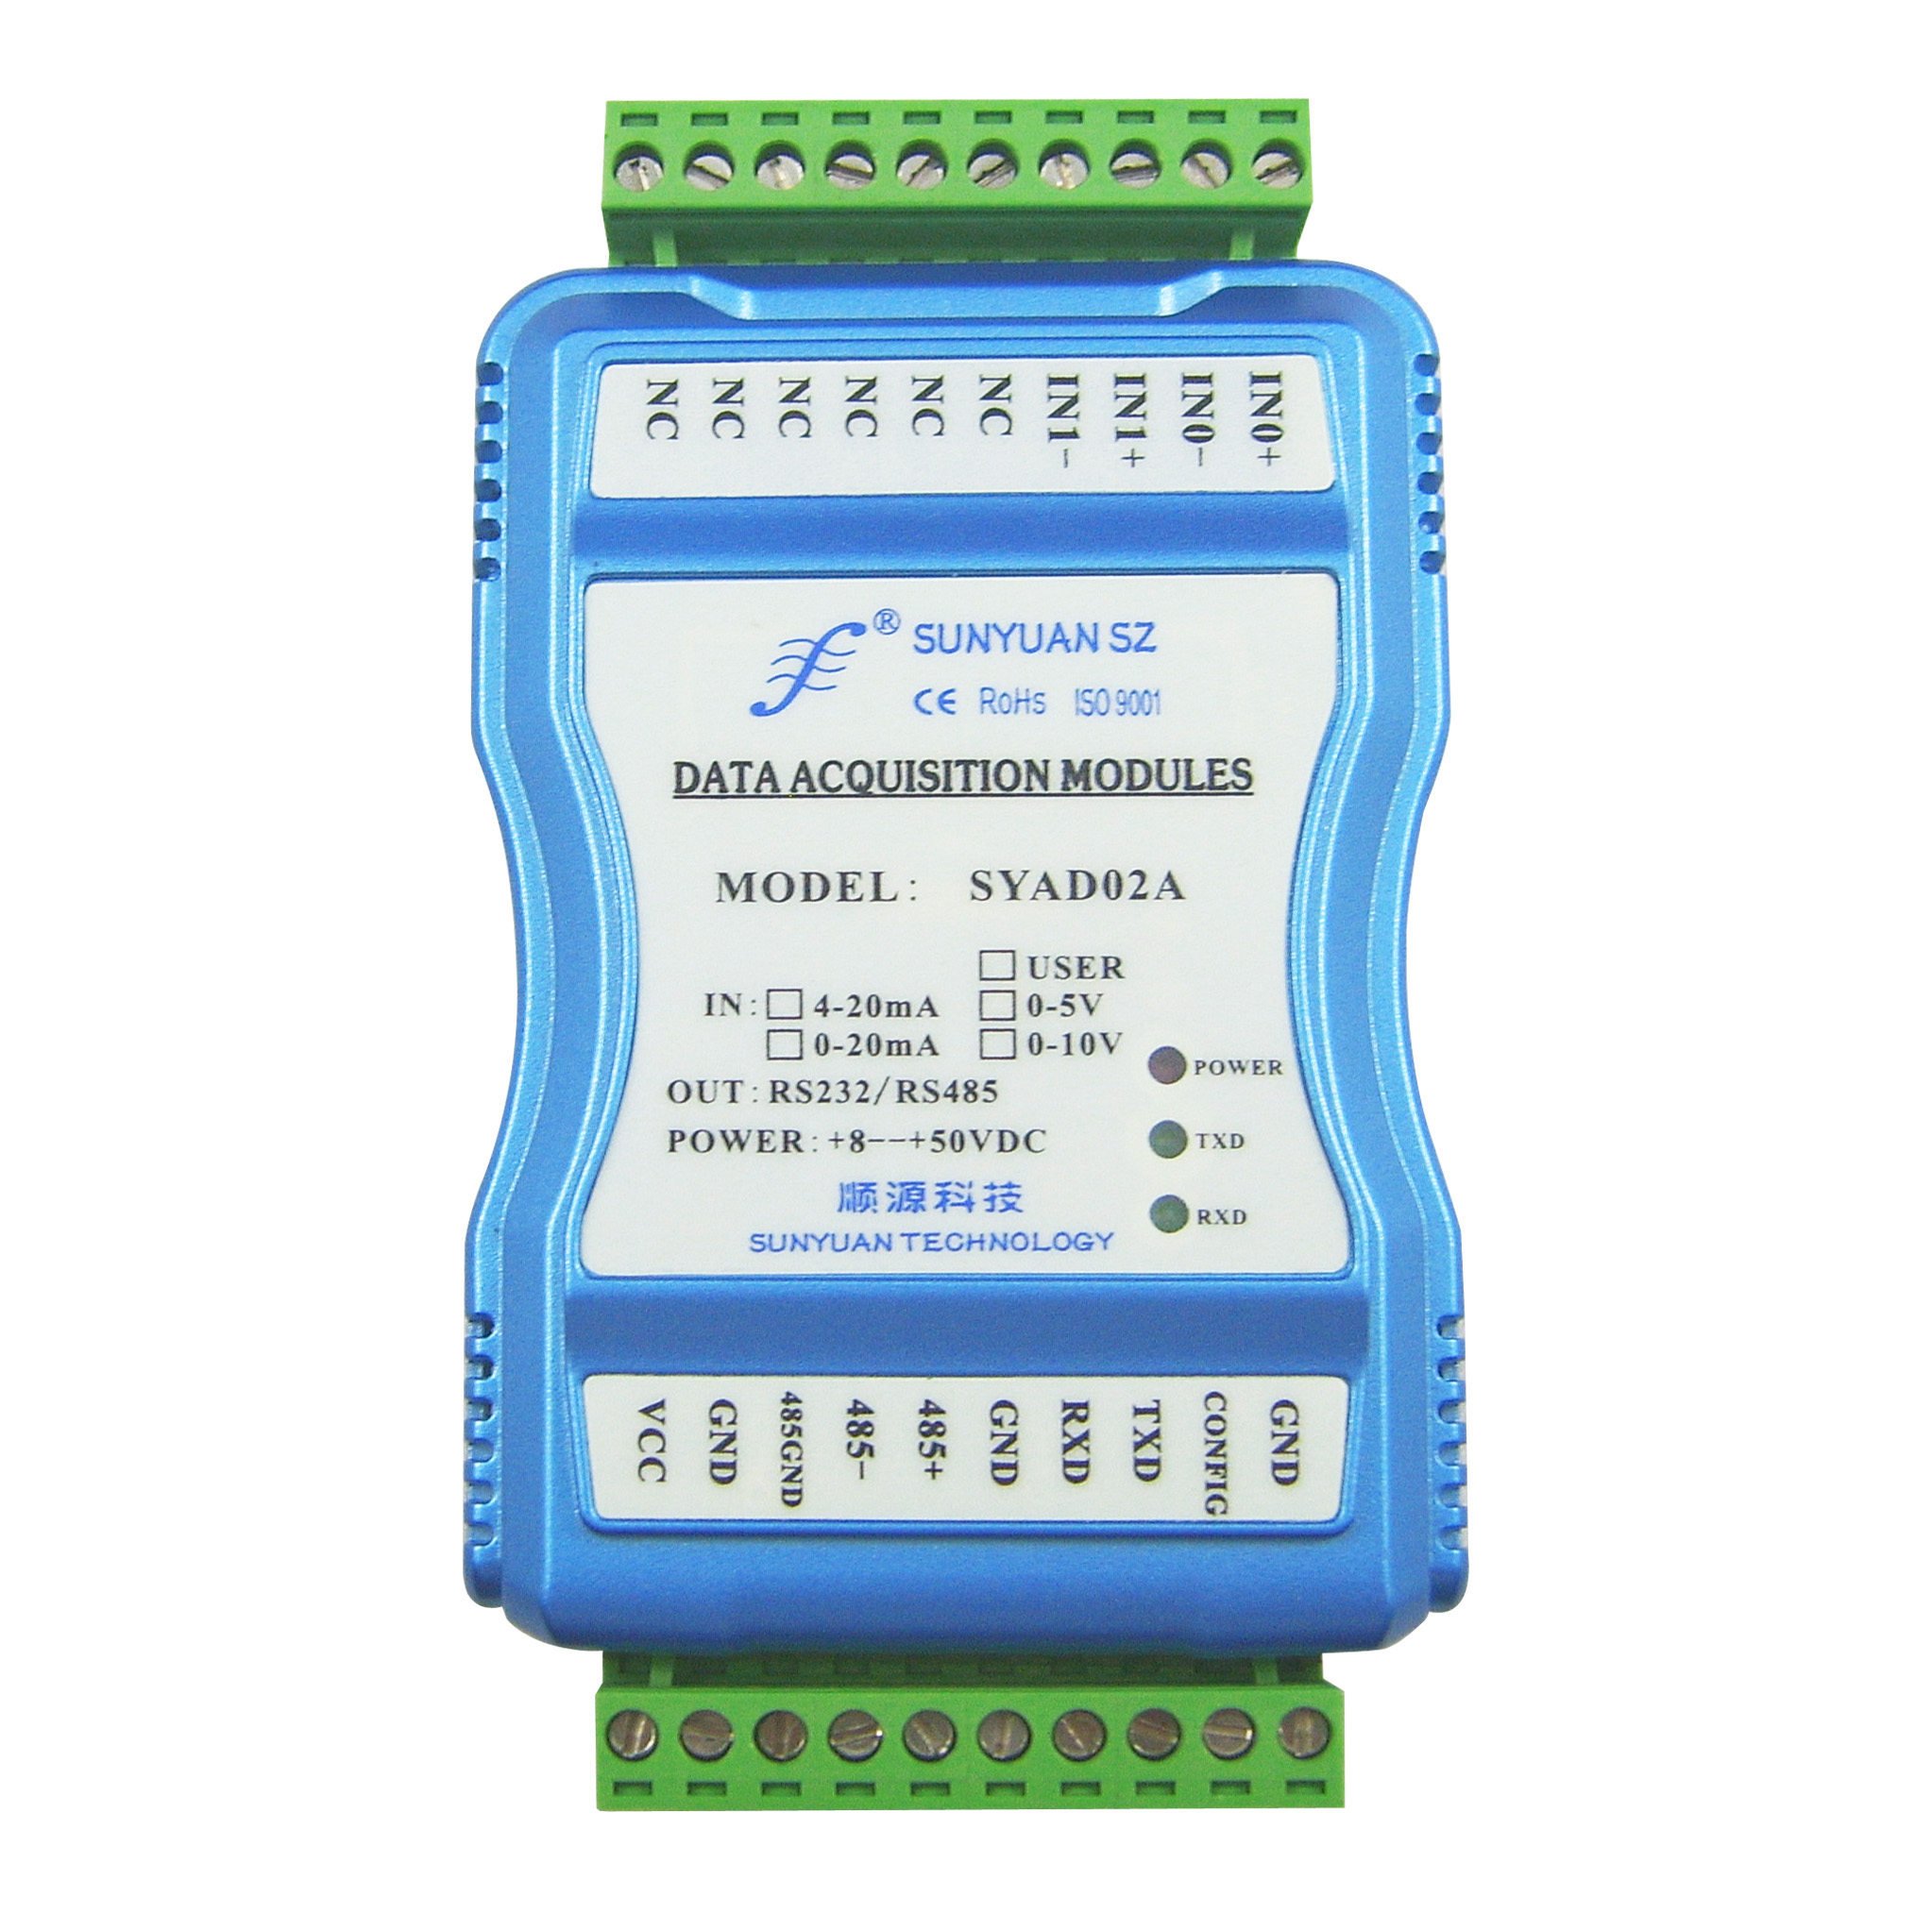 低成本多路模拟信号数据采集器:SY AD 02A/04系列